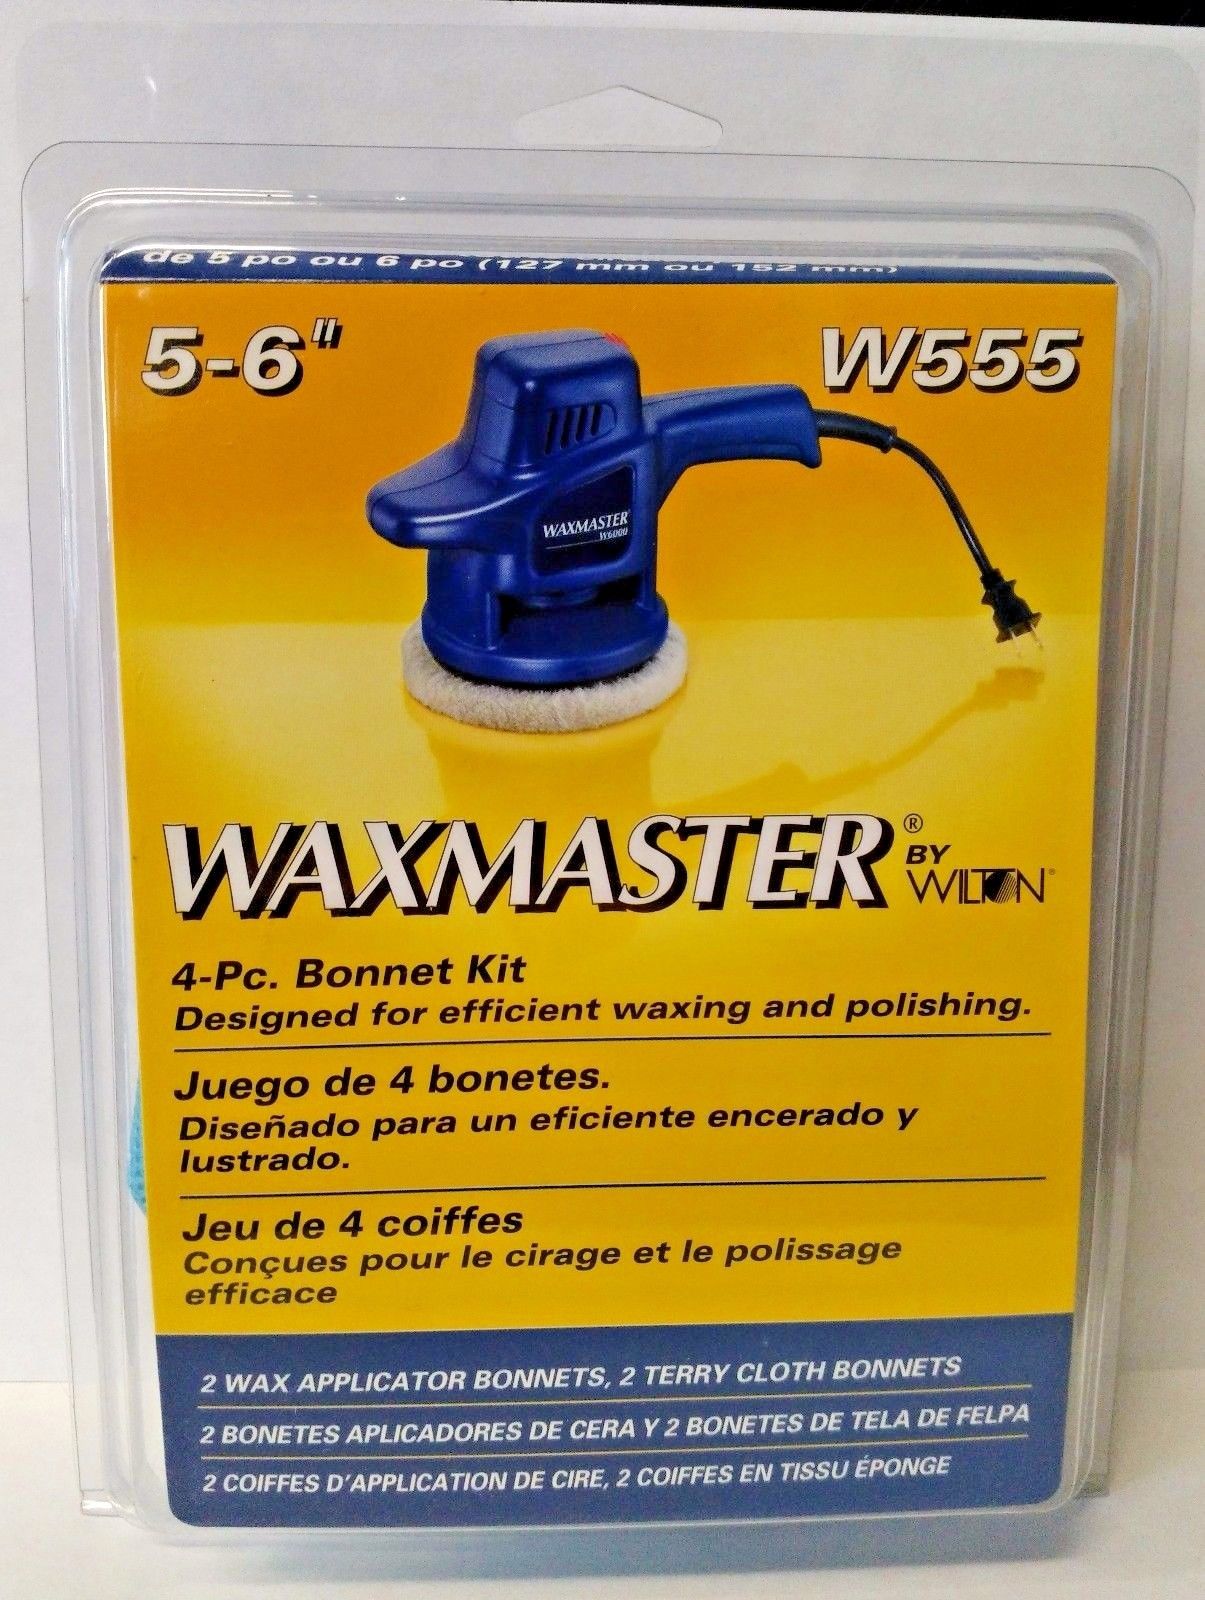 Waxmaster by Wilton 5-6" 4 Piece Bonnet Kit W555